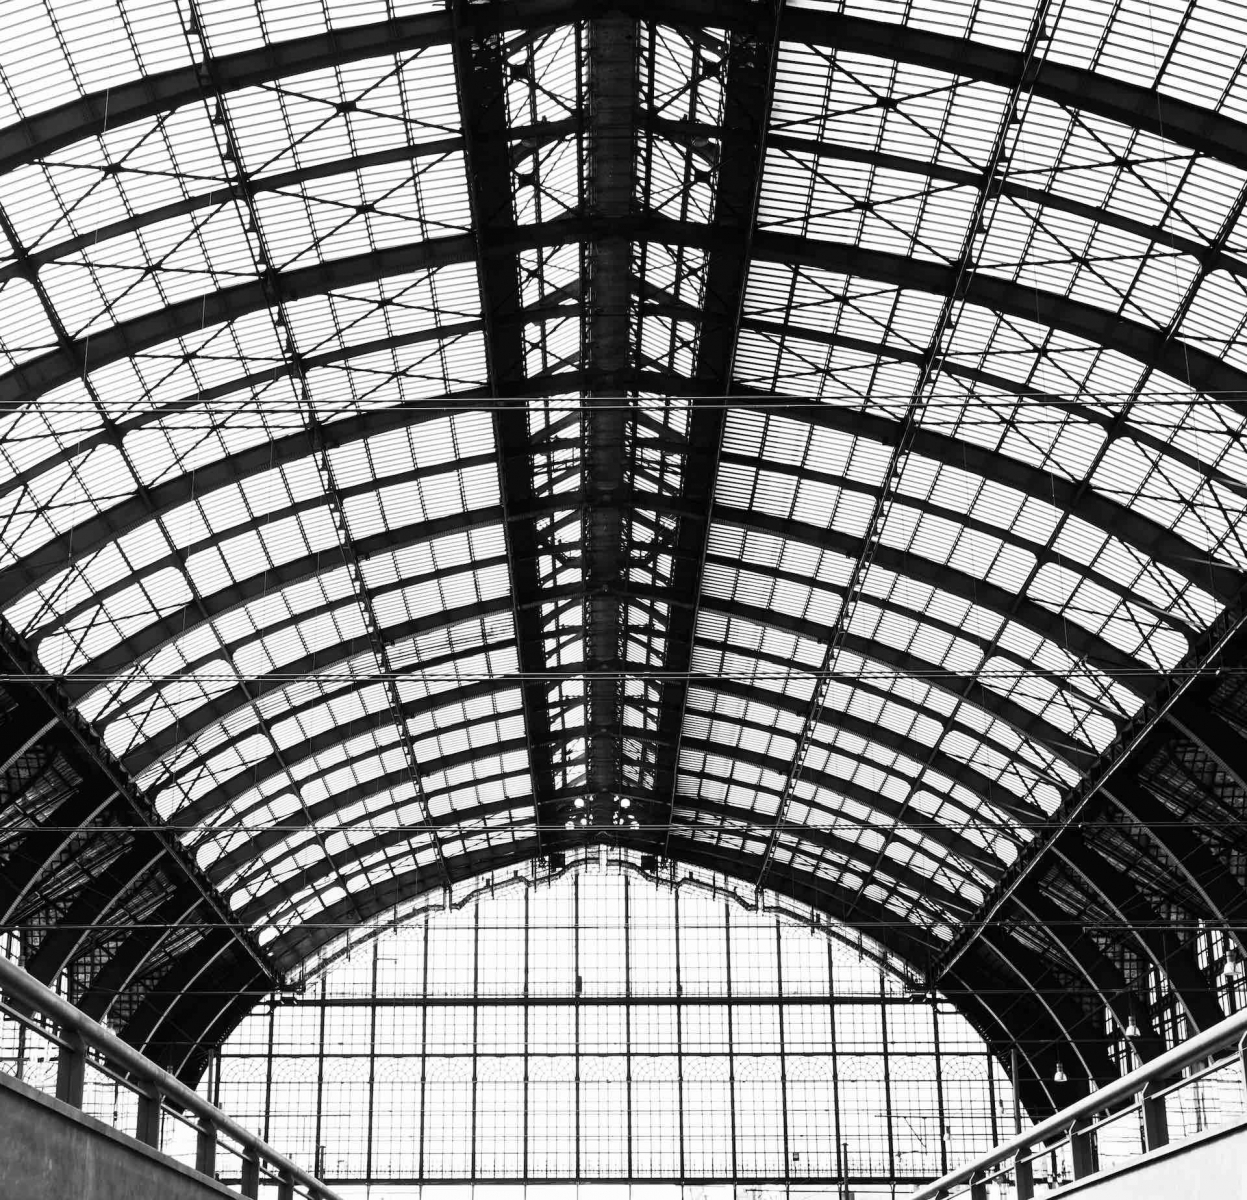 La construction en fer au-dessus de la gare centrale d'Anvers